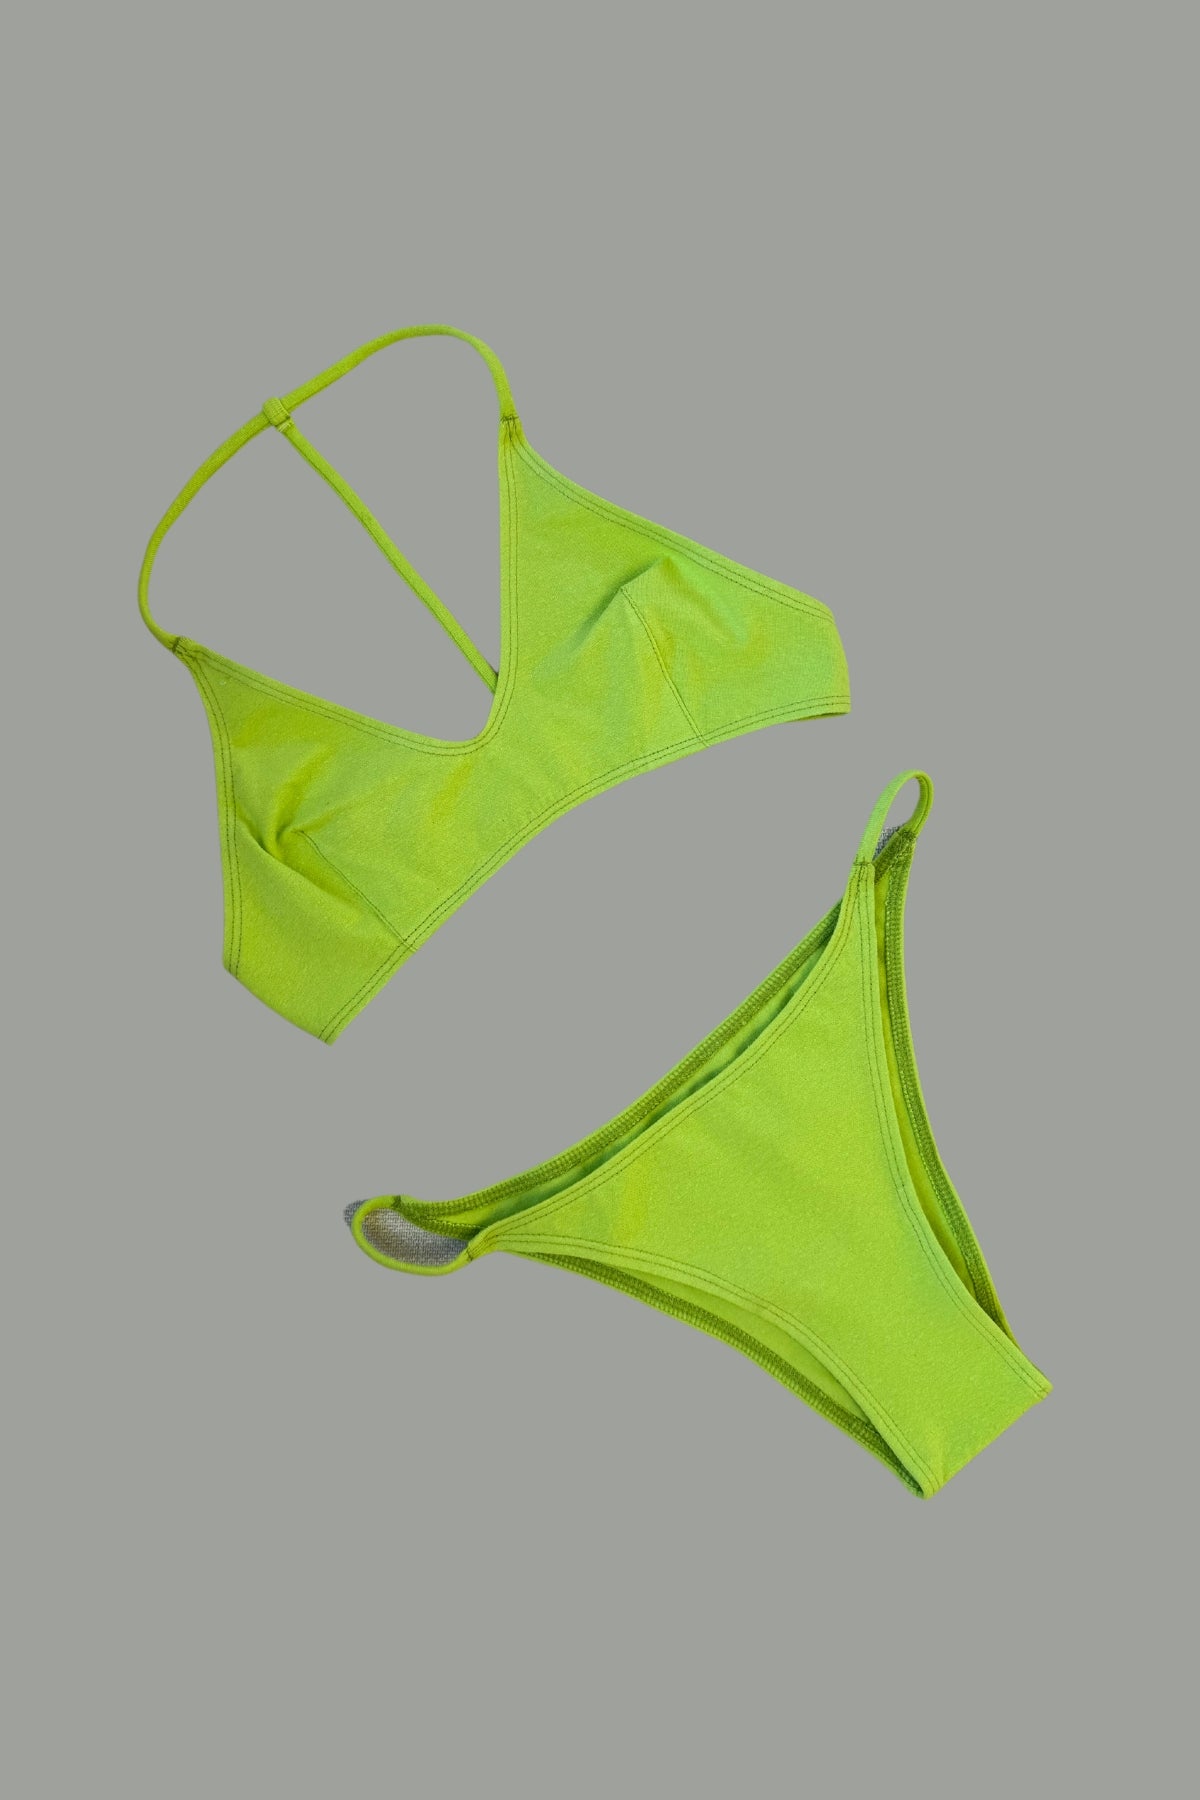 CORAL GREEN, One String Bikini Top